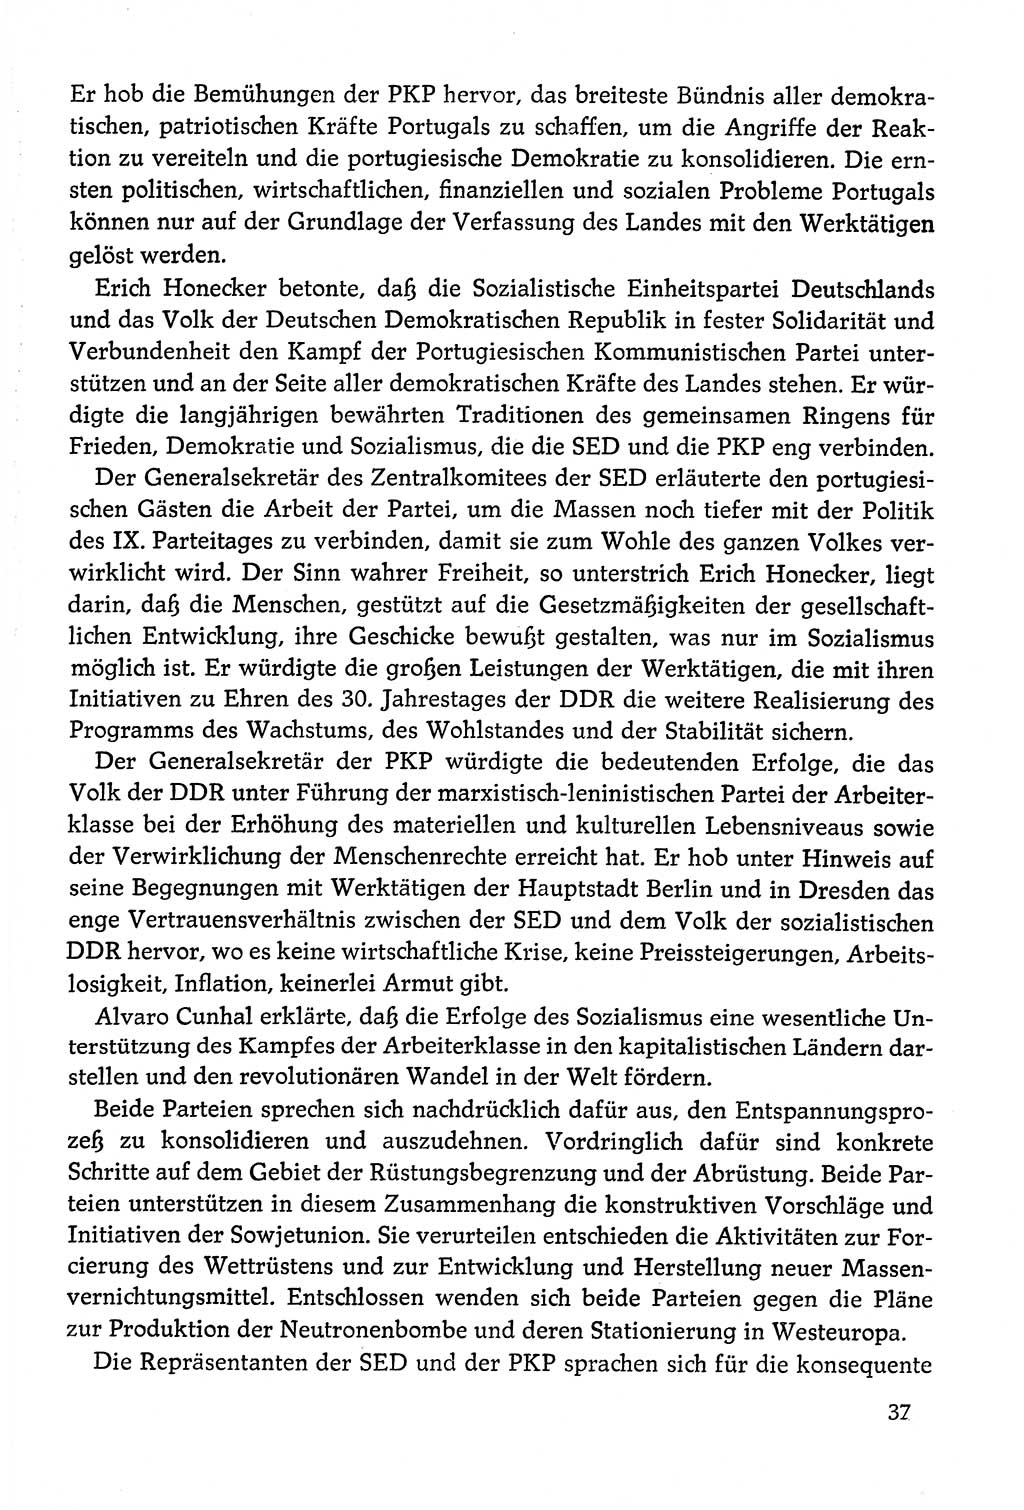 Dokumente der Sozialistischen Einheitspartei Deutschlands (SED) [Deutsche Demokratische Republik (DDR)] 1978-1979, Seite 37 (Dok. SED DDR 1978-1979, S. 37)